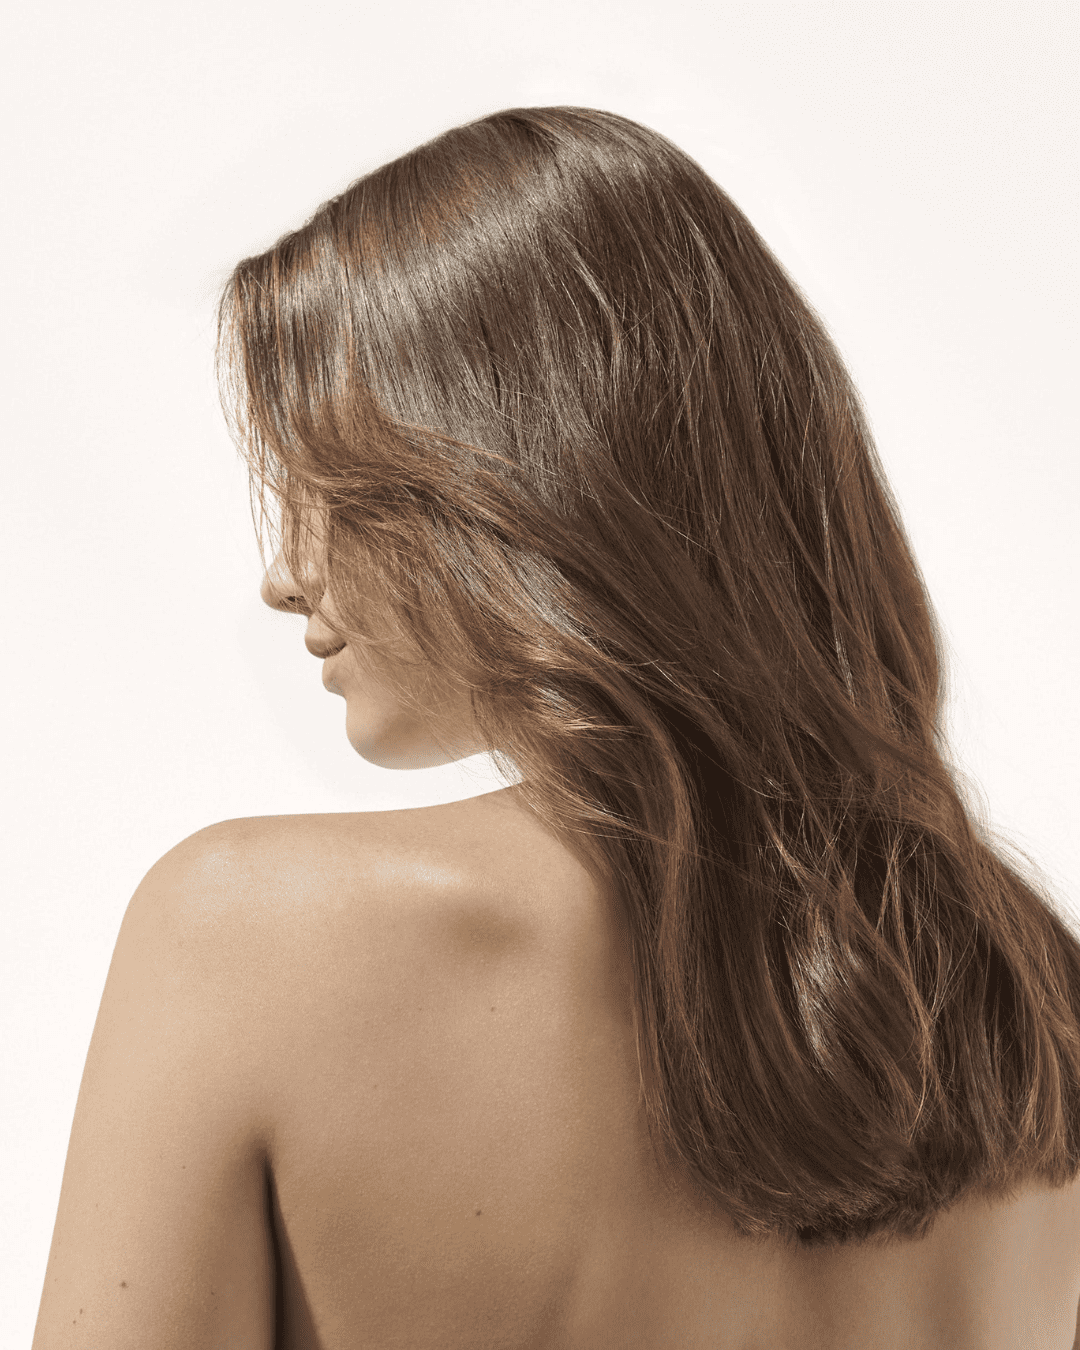 Article : Cheveux : 4 bonnes raisons de passer au naturel